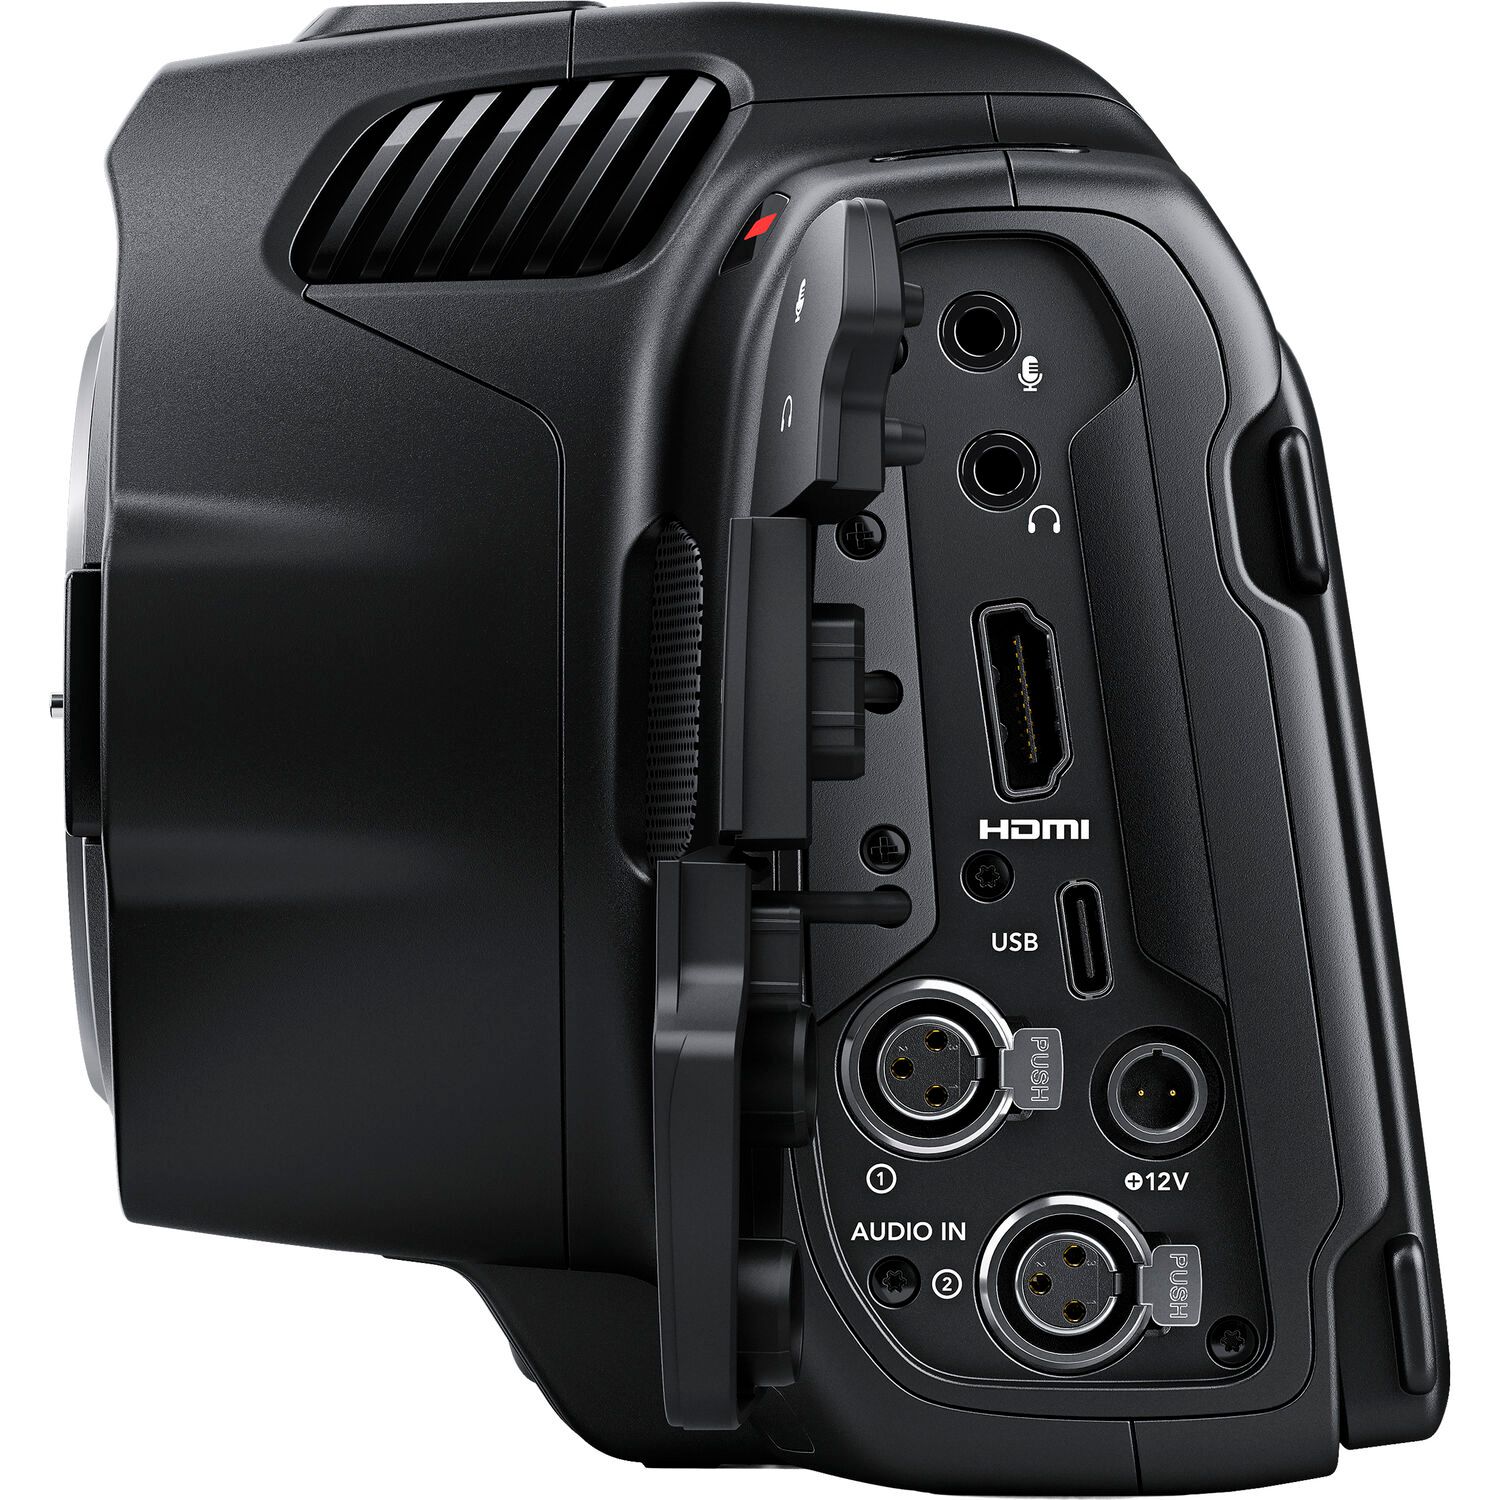 Видеокамера Blackmagic Design Pocket Cinema Camera 6K Pro черный